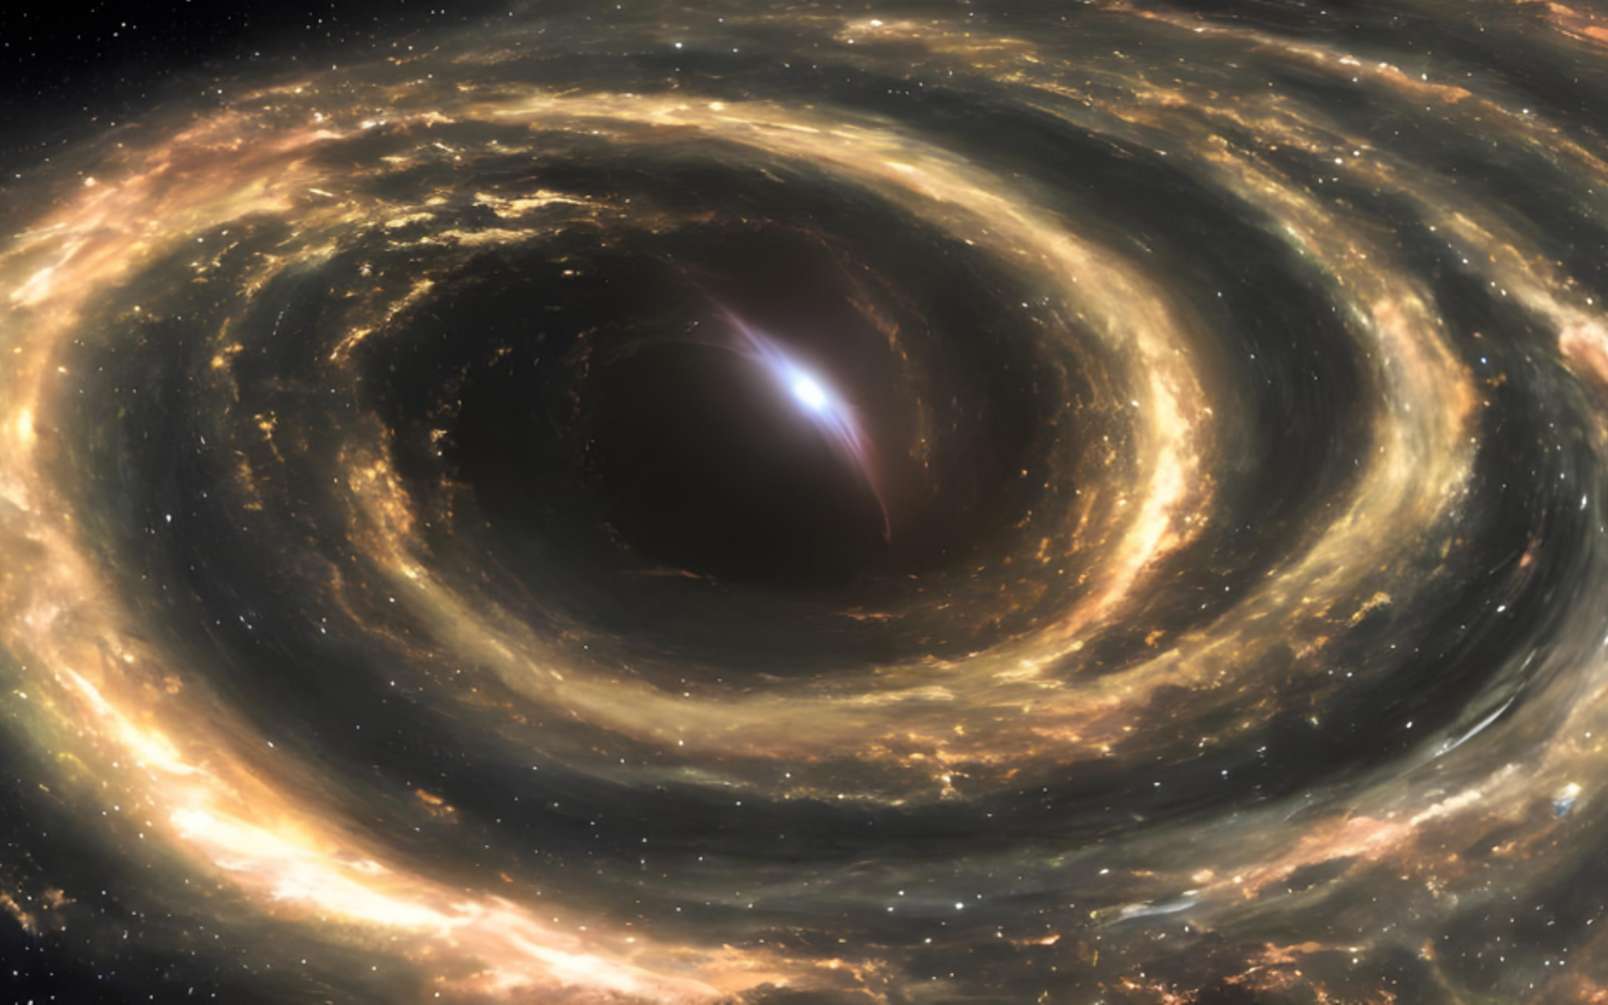 Incroyable : les trous noirs sont peut-être la cause de l'énergie noire